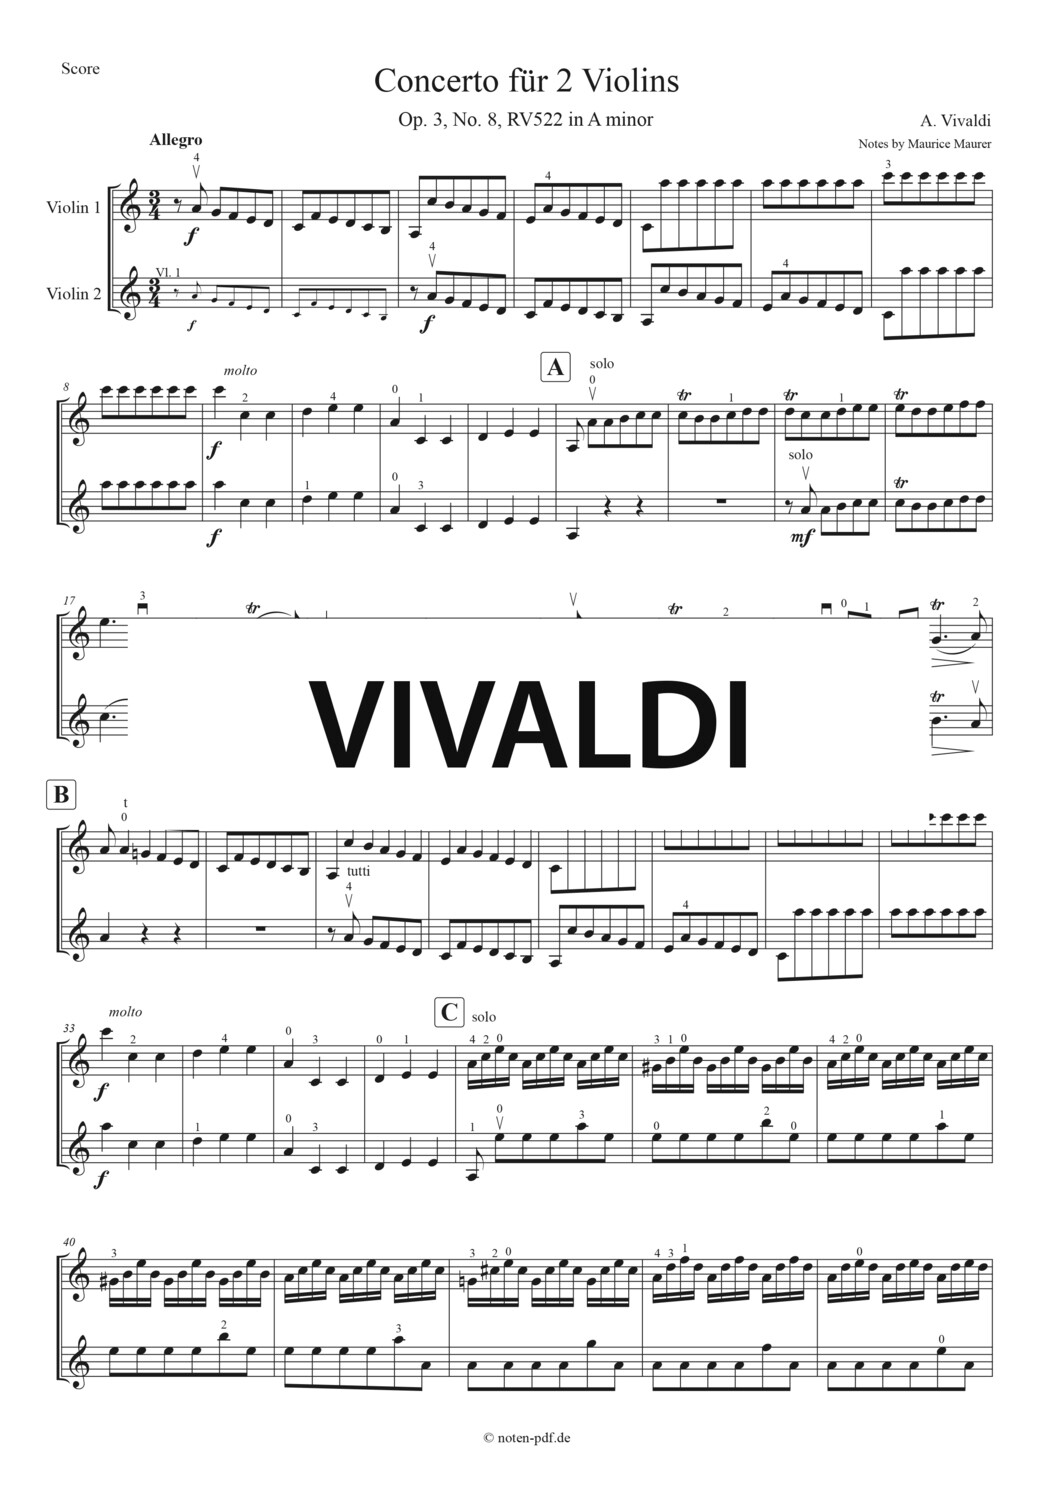 Vivaldi: Concerto for 2 Violins in A minor - 3. Movement